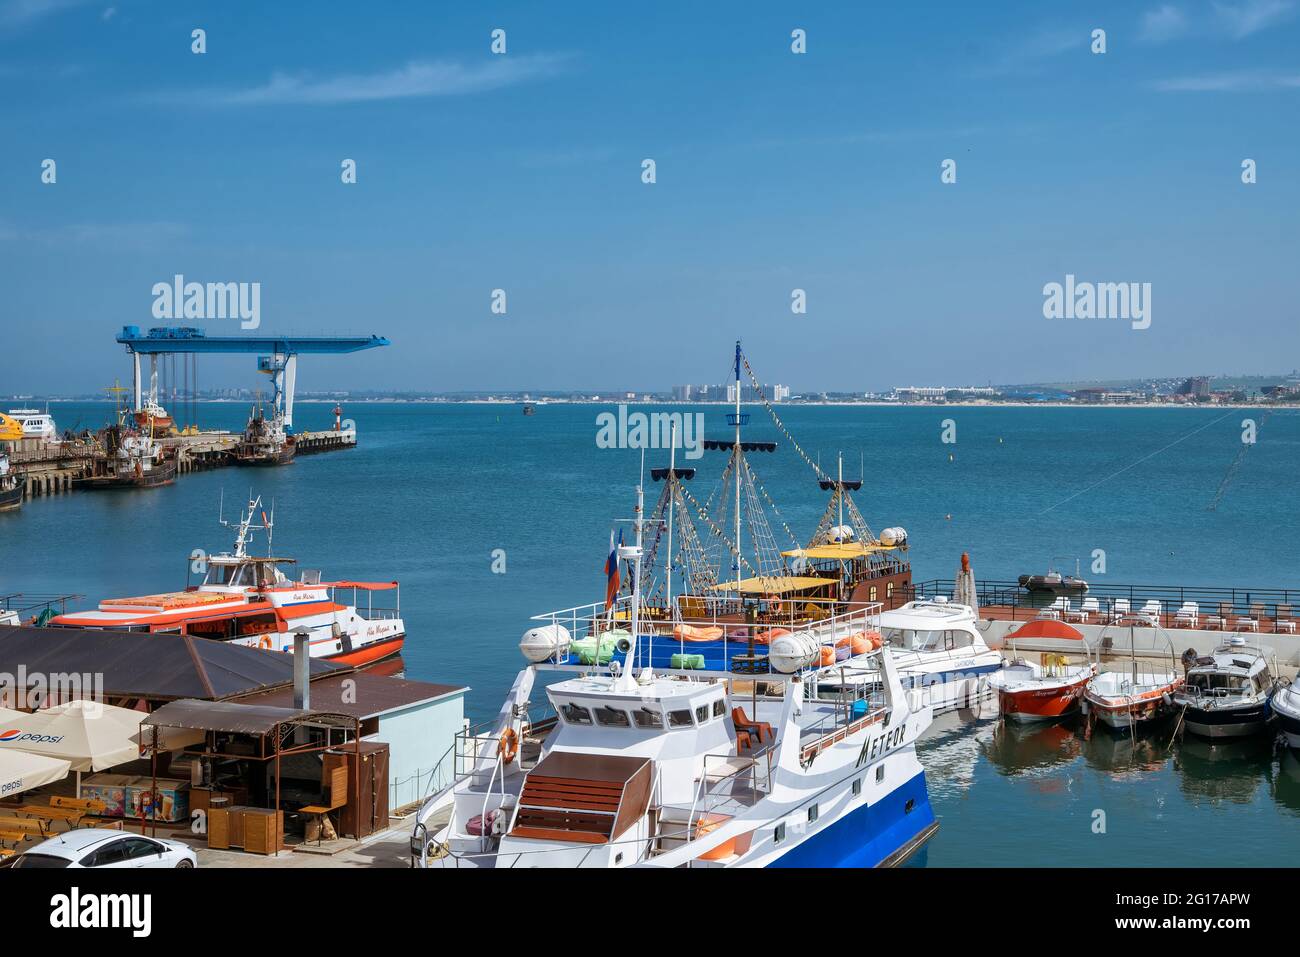 Anapa Russland 1. Juli 2020 - ein Ferienort im Süden Russlands, die Küste des Schwarzen Meeres, Strände, Hafen und Straßen der Stadt, Sommerzeit Stockfoto